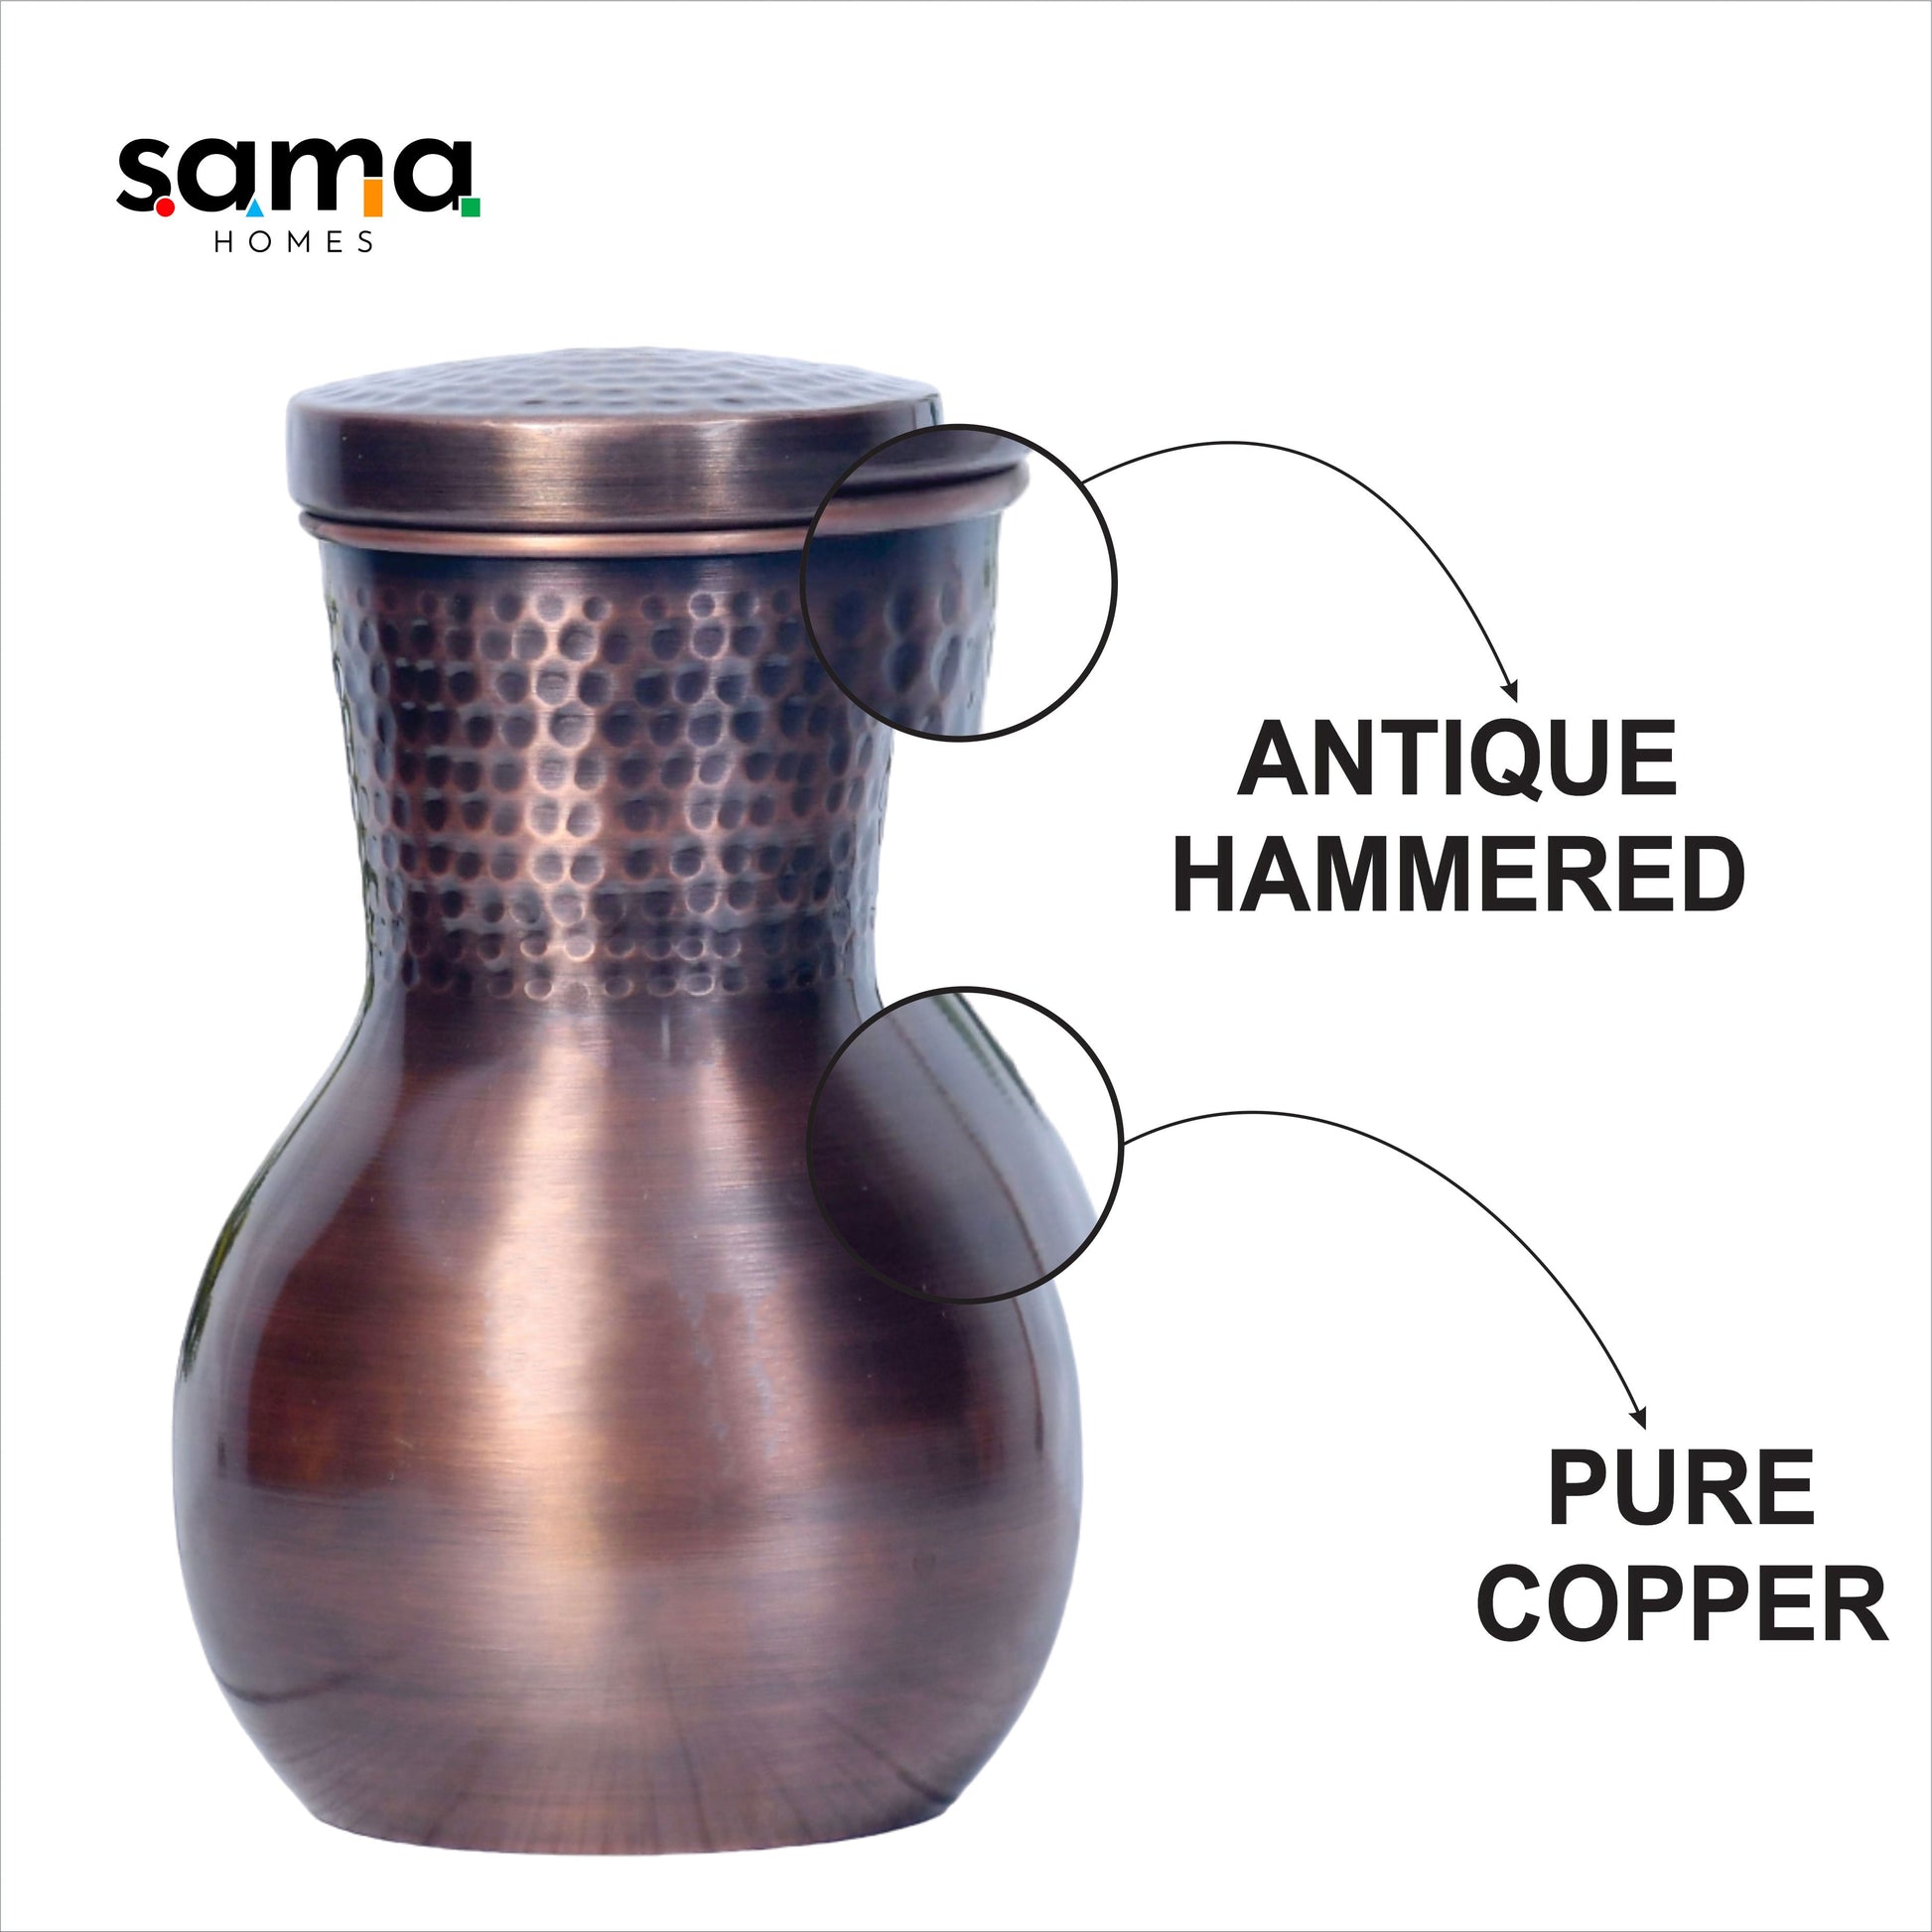 SAMA Homes - pure copper bedside damru jar antique hammered